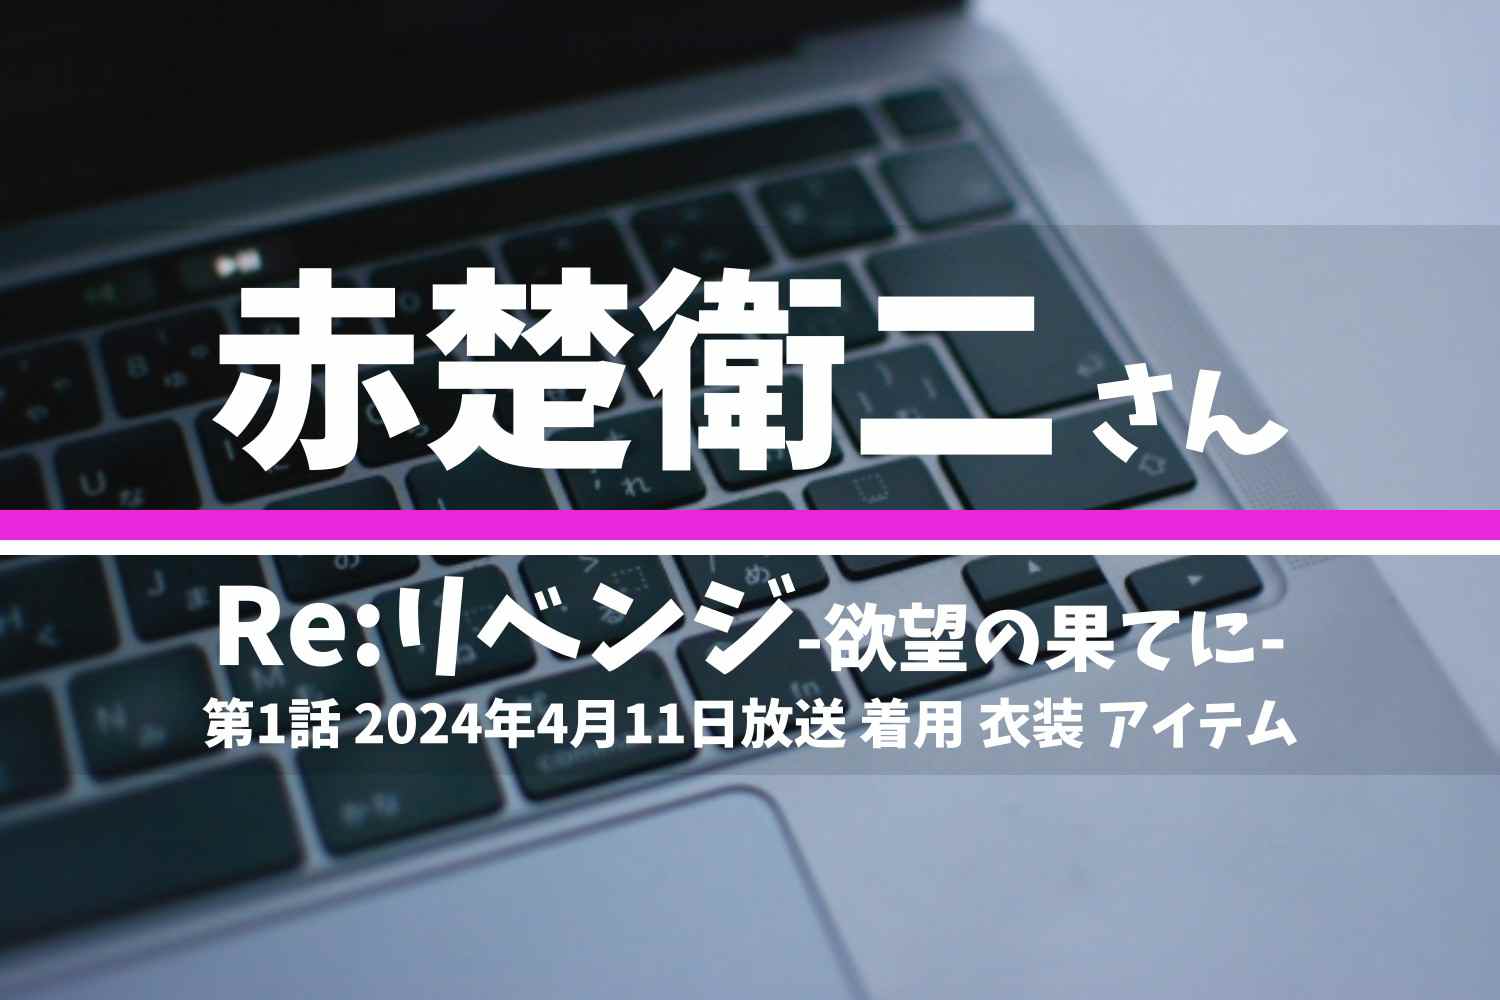 Re:リベンジ-欲望の果てに- 赤楚衛二さん テレビドラマ 衣装 2024年4月11日放送